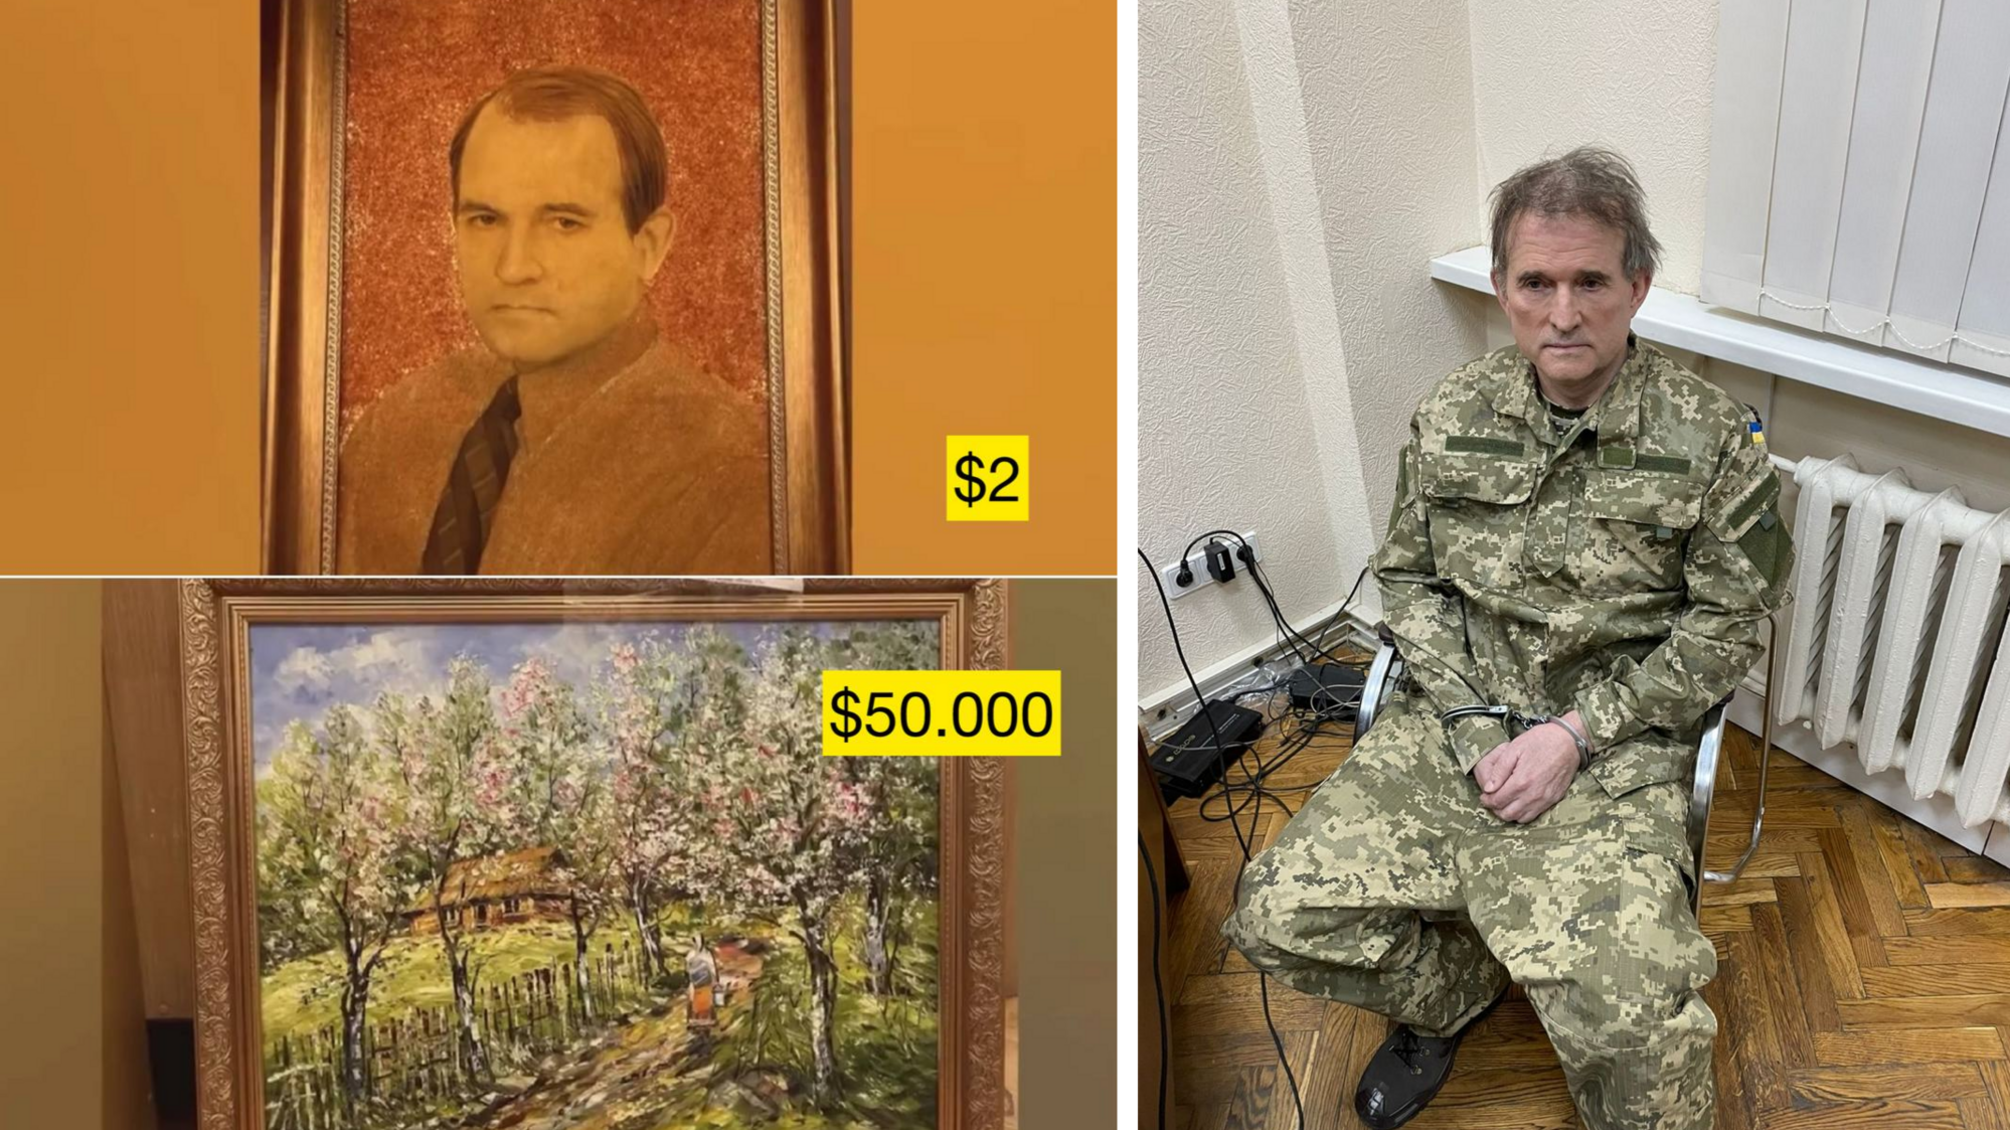 264 арестованных картин Медведчука готовятся к продаже, - АРМА